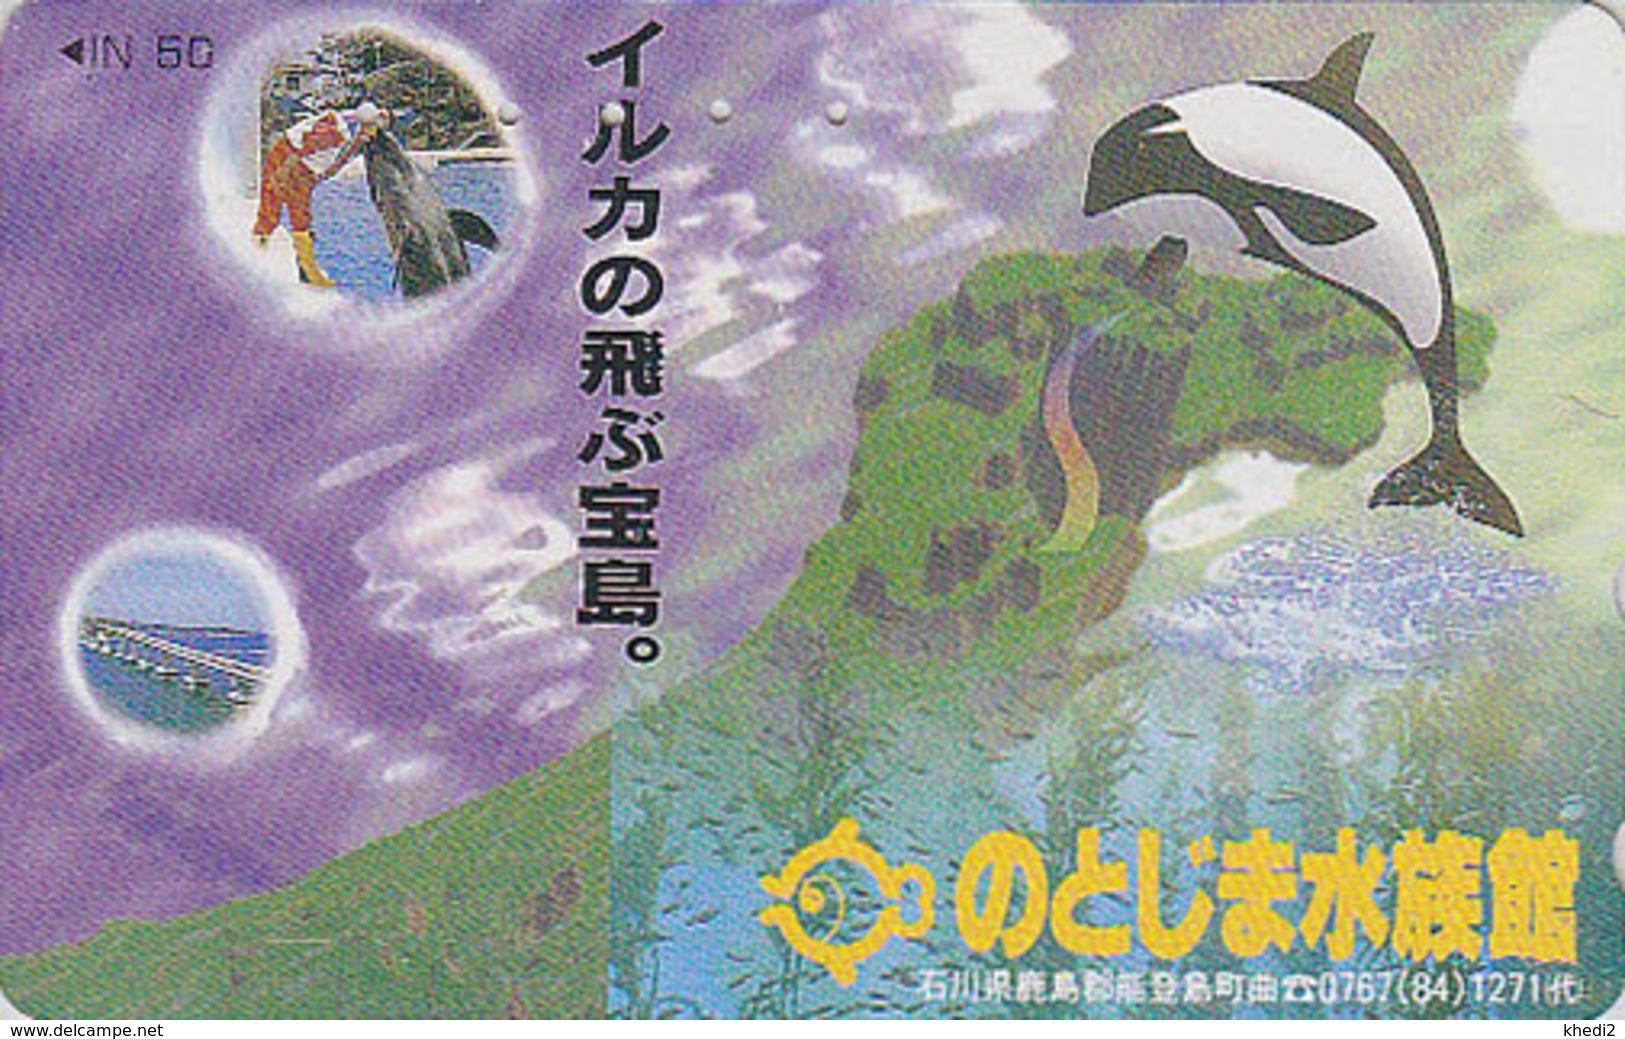 Télécarte Japon / 110-011 - ANIMAL - BALEINE ORQUE / Série Dressage 1 - ORCA WHALE  Japan Phonecard - 332 - Dauphins